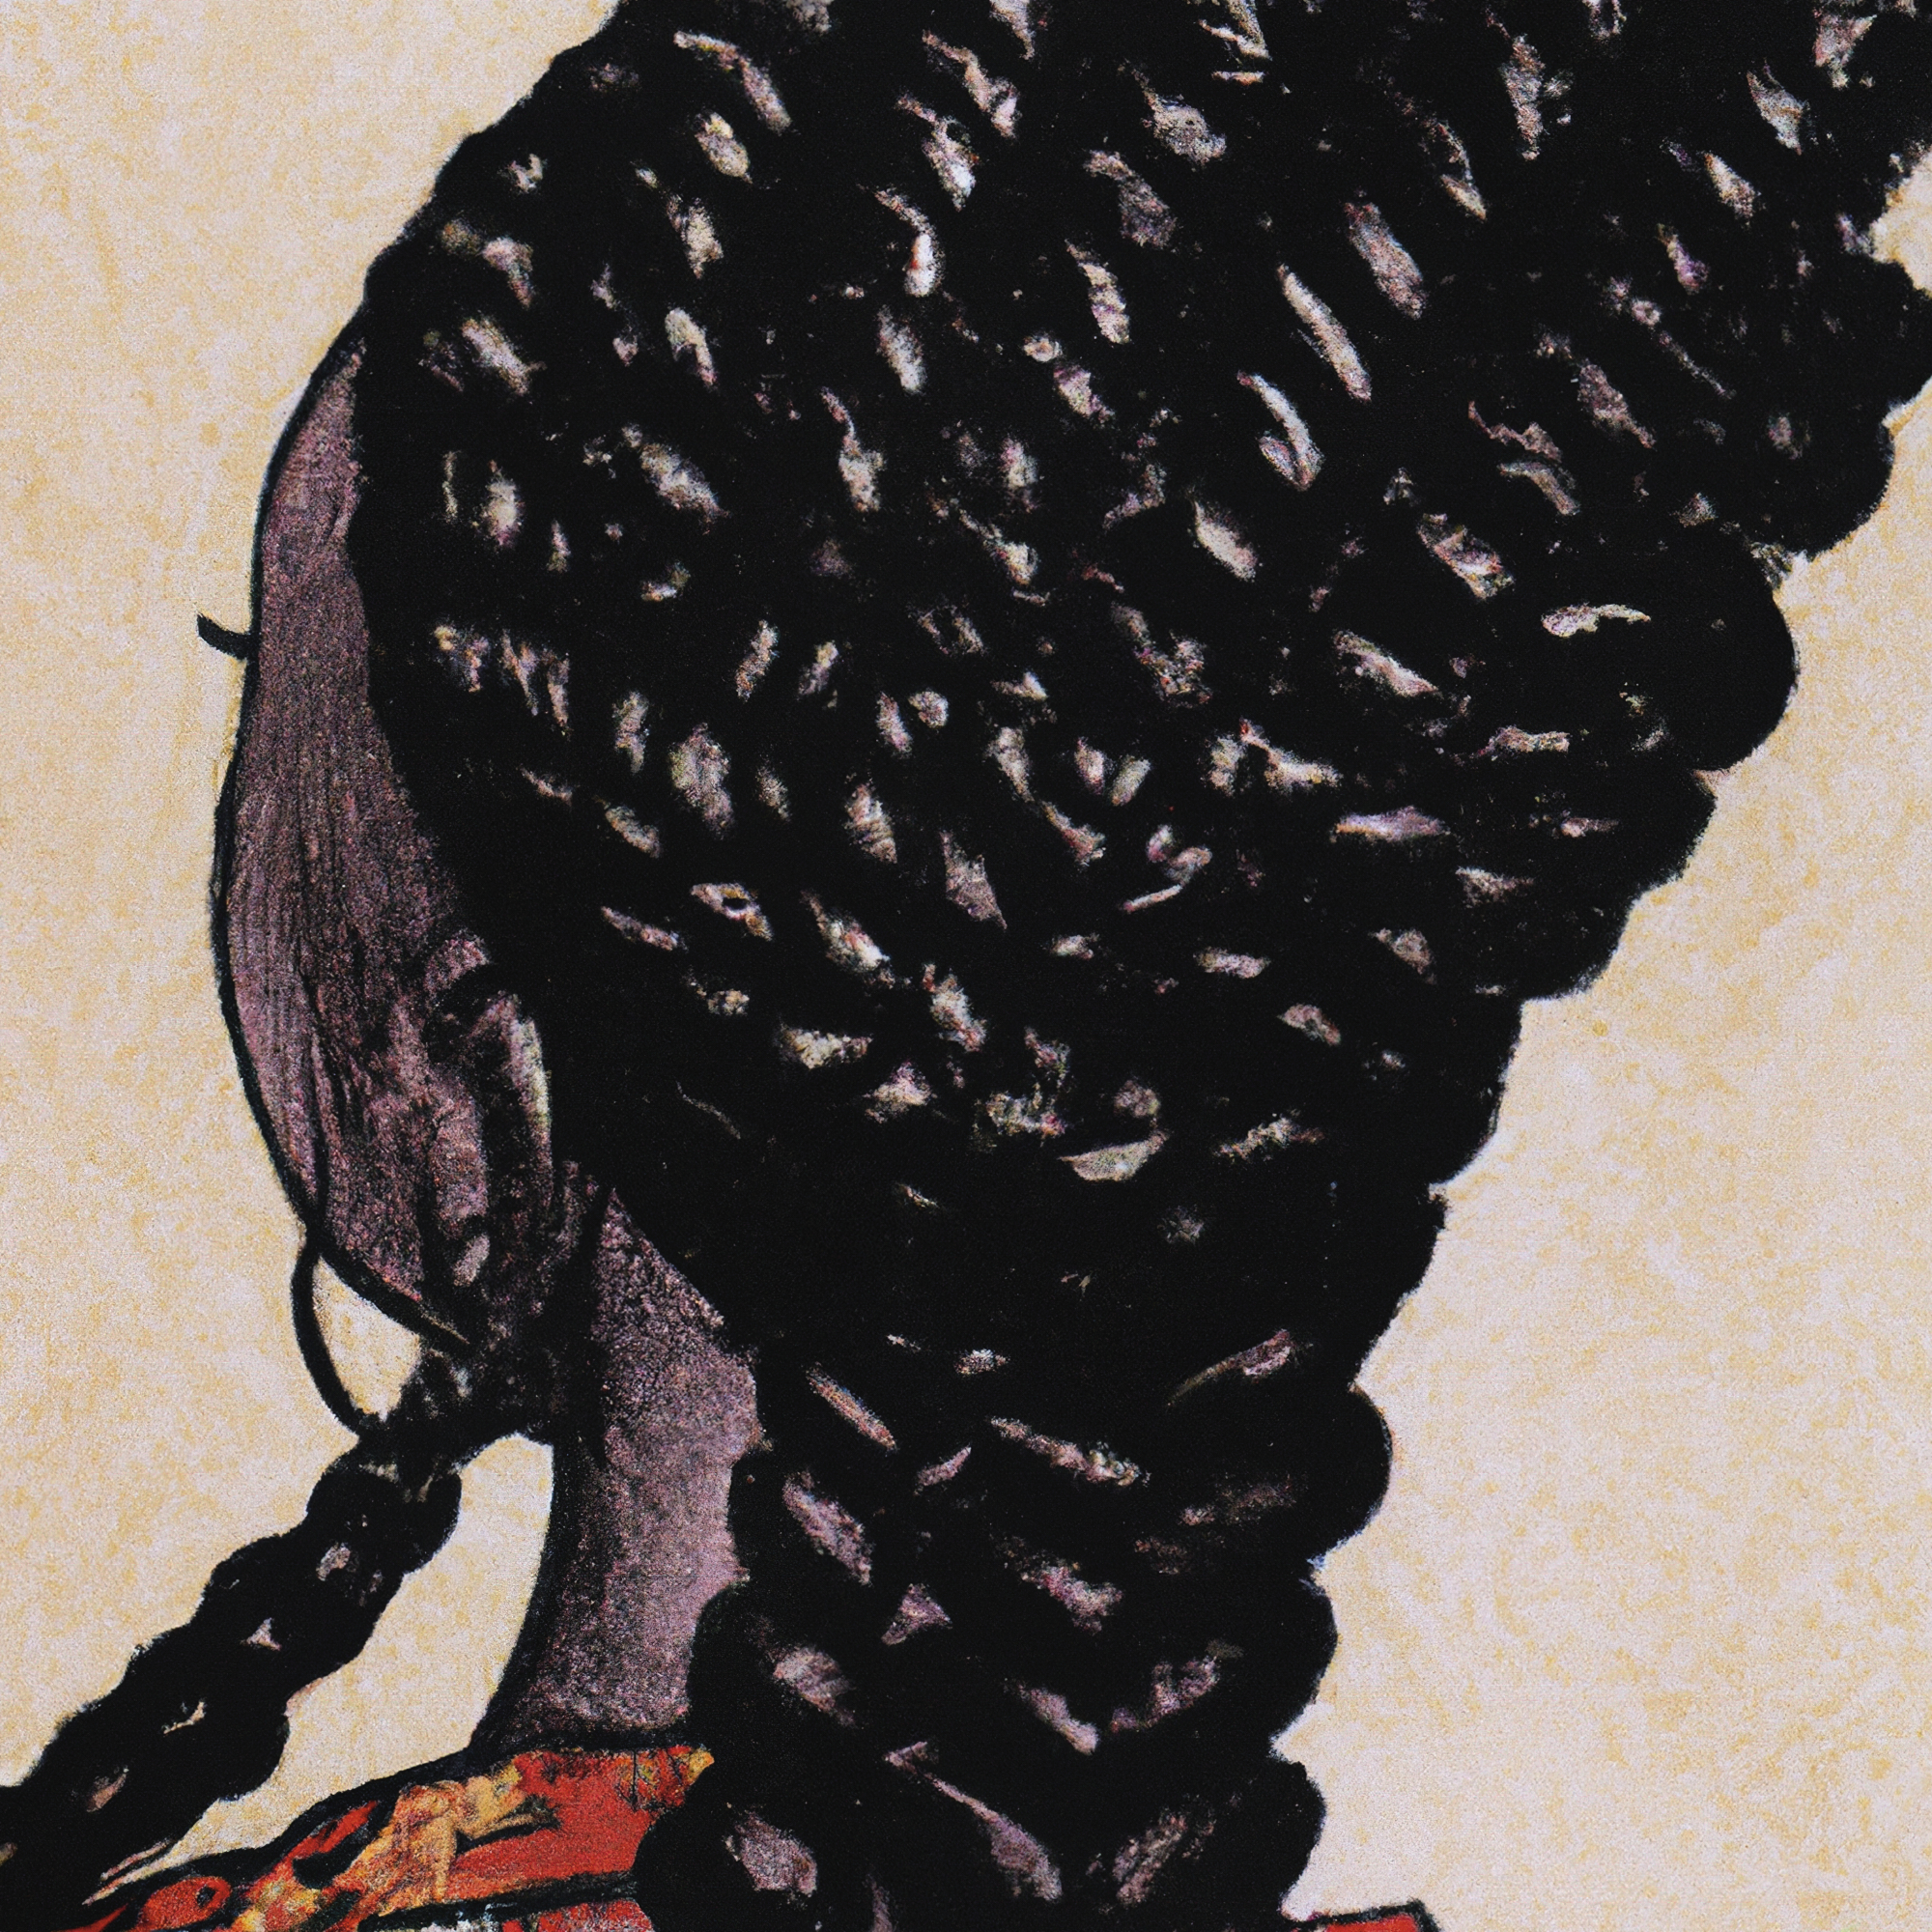 Illustration von Braids an schwarzer Frau